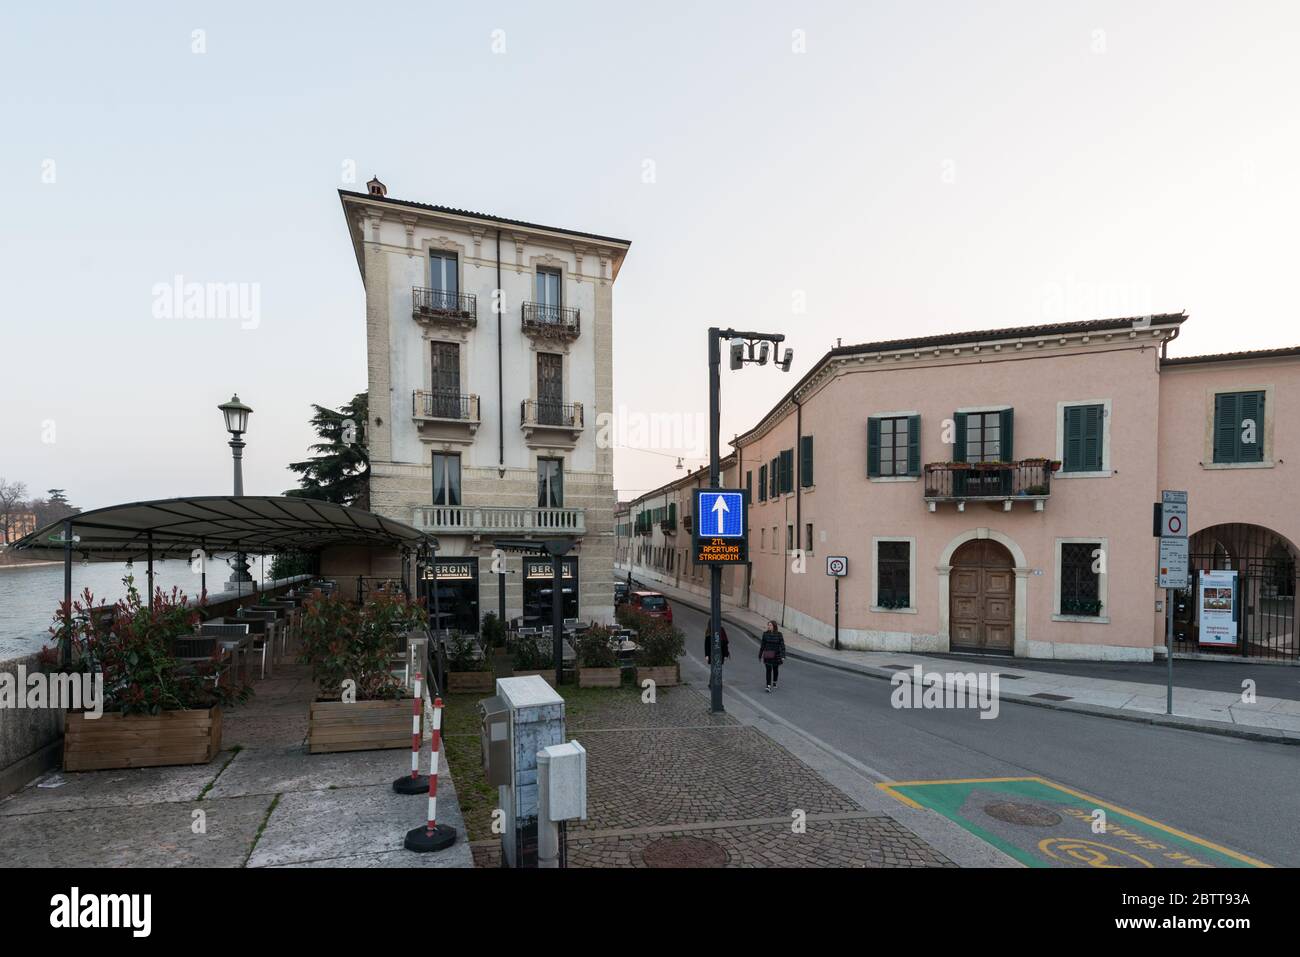 VERONA, ITALIA - 14, MARZO de 2018: Imagen horizontal de edificios antiguos cerca del río Adige en Verona, Italia Foto de stock